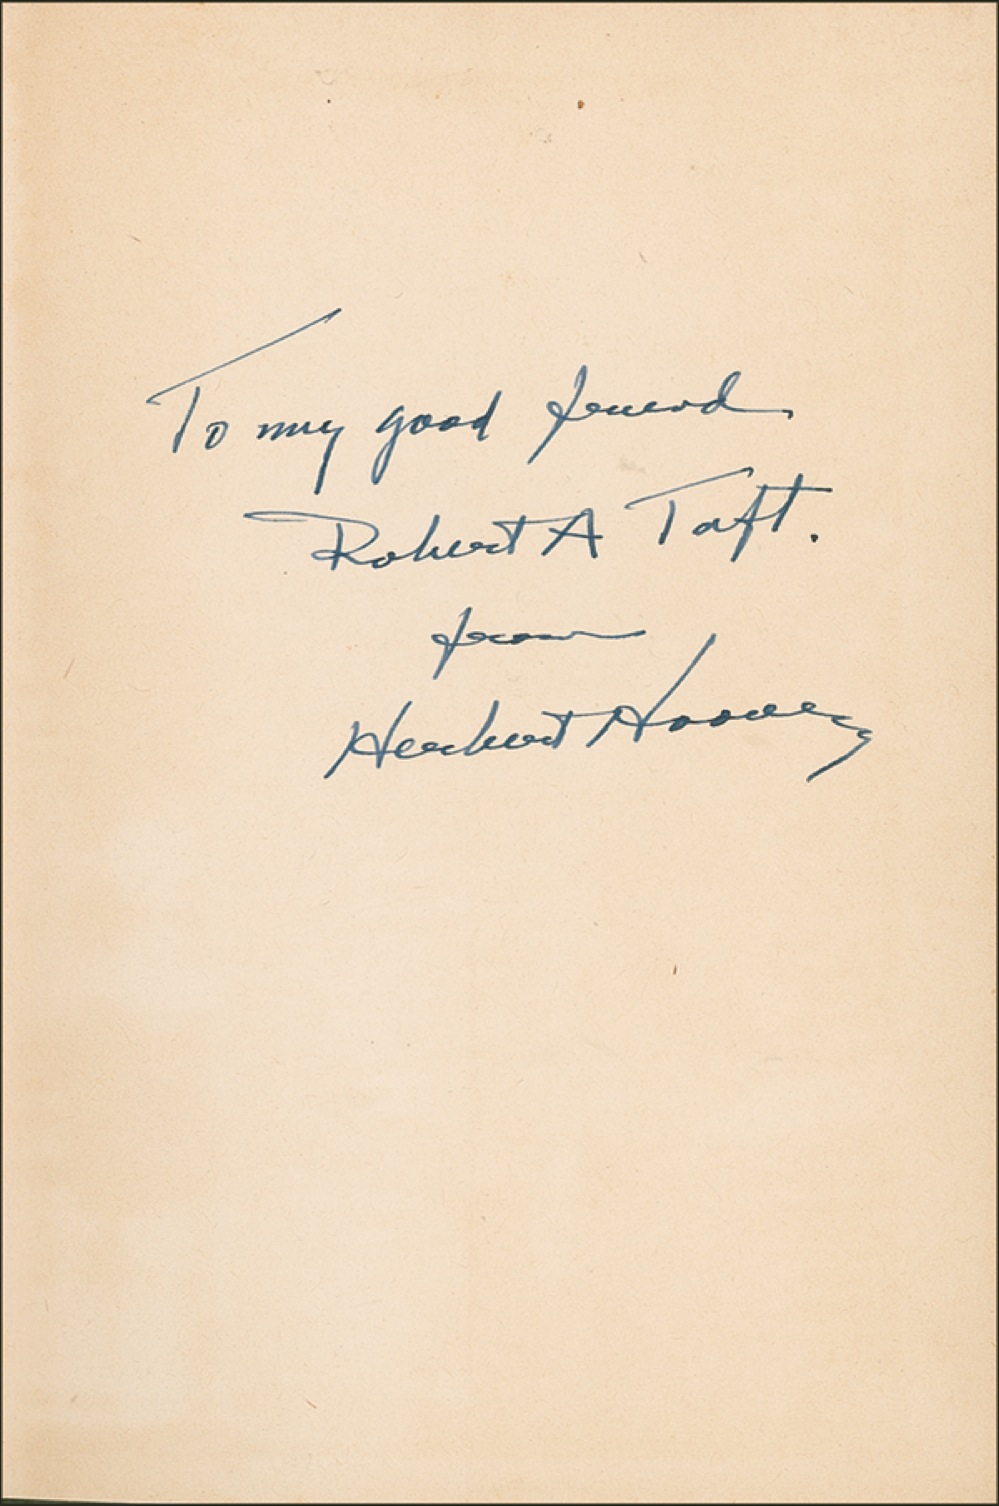 Lot #33 Herbert Hoover